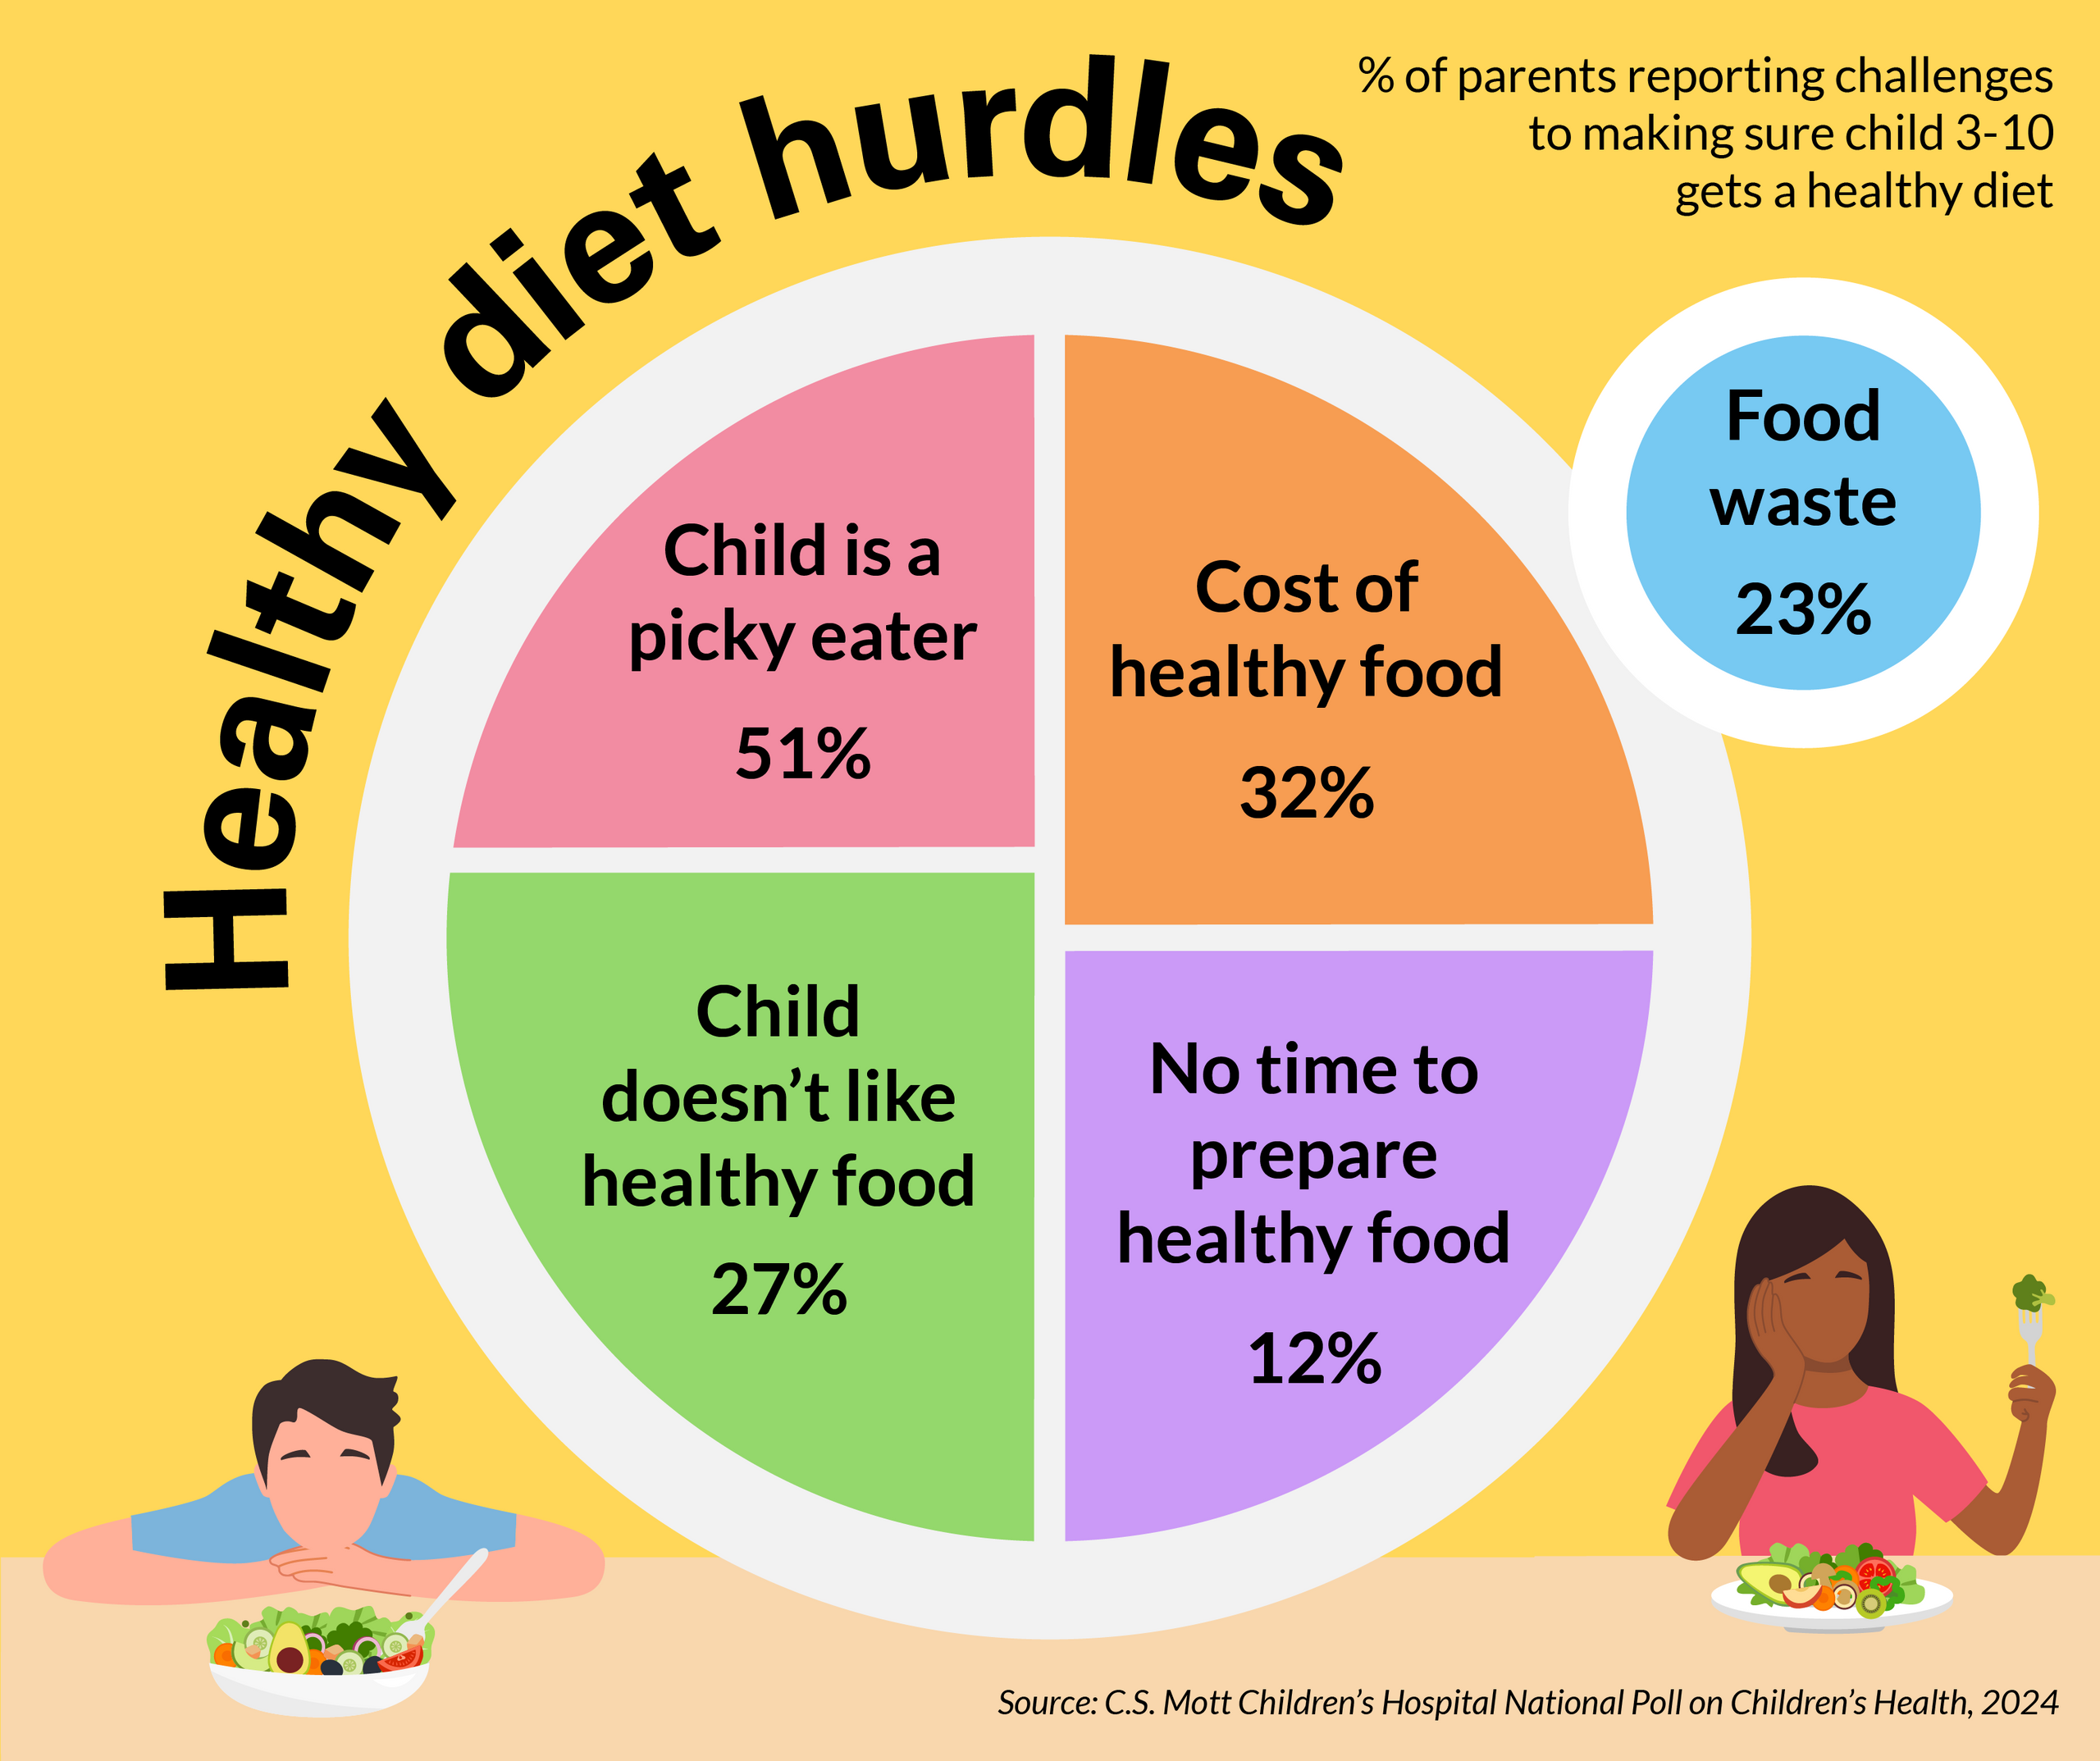 γιατί αποτυγχάνουν οι στρατηγικές των γονιών για πιο ισορροπημένη διατροφή των παιδιών